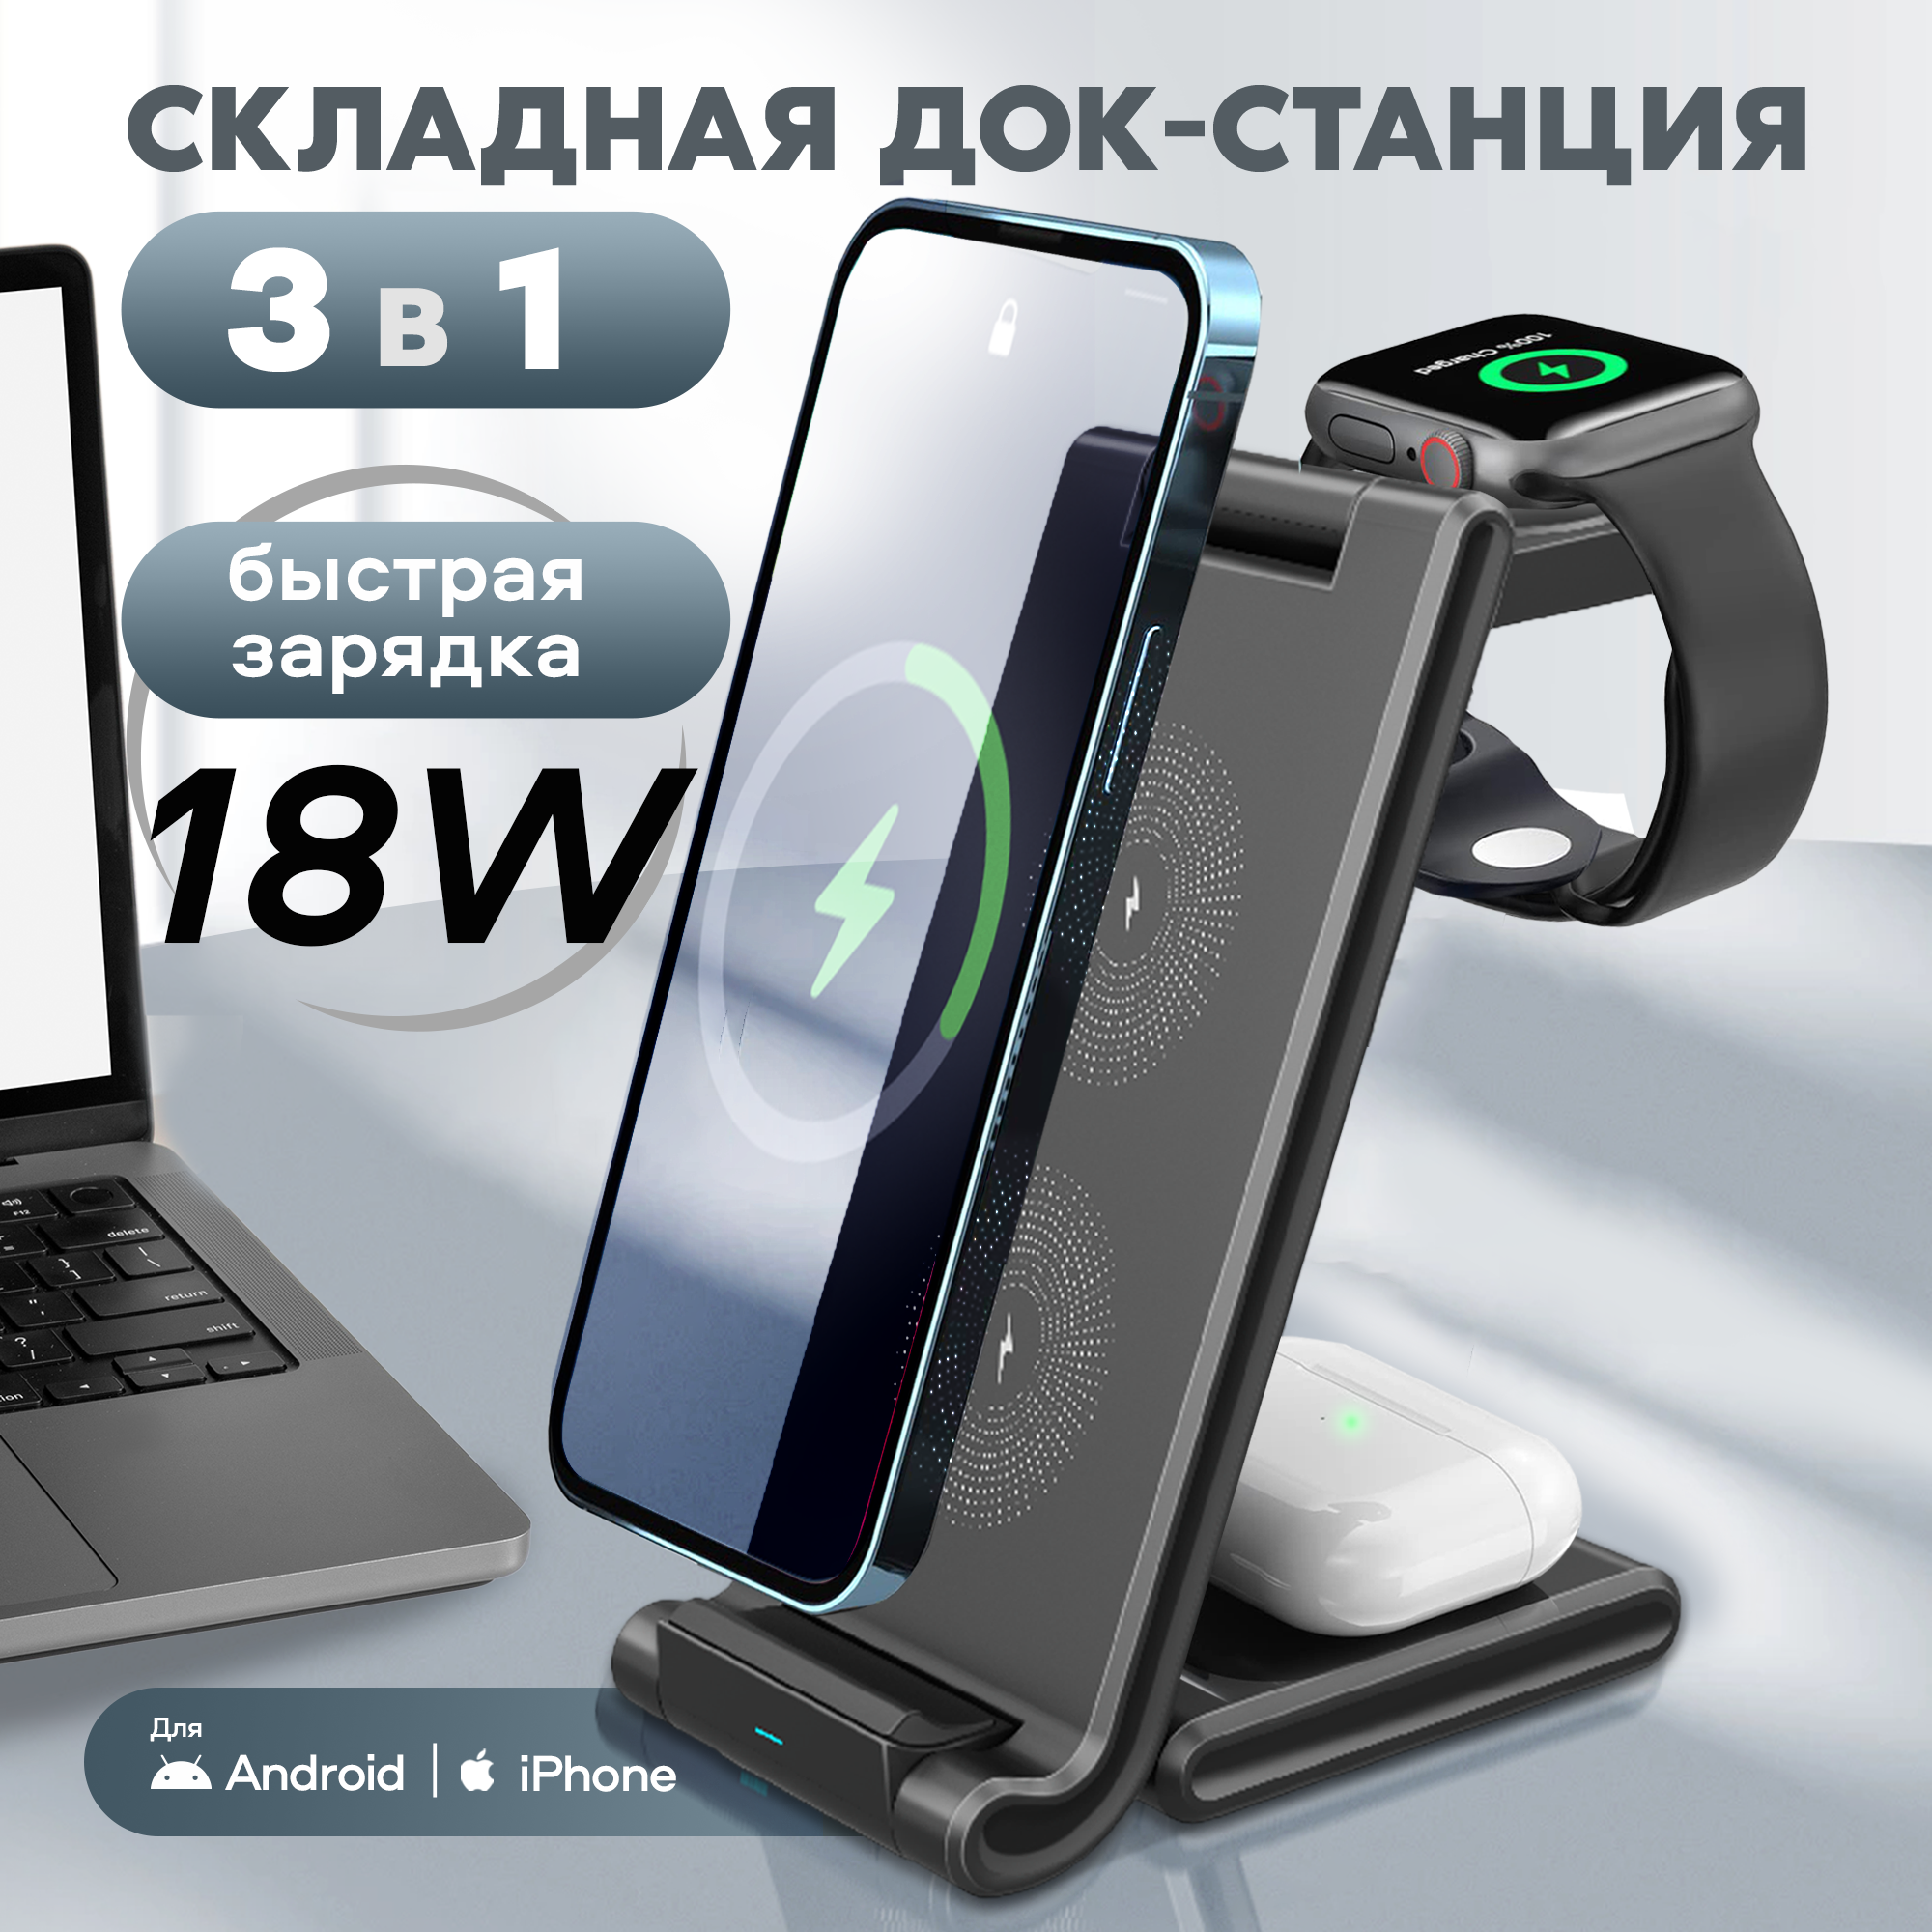 Беспроводная зарядка для телефона iphone, WALKER, WH-53, зарядное устройство на андроид, станция 3 в 1, зарядник для часов, самсунг, xiaomi, черная